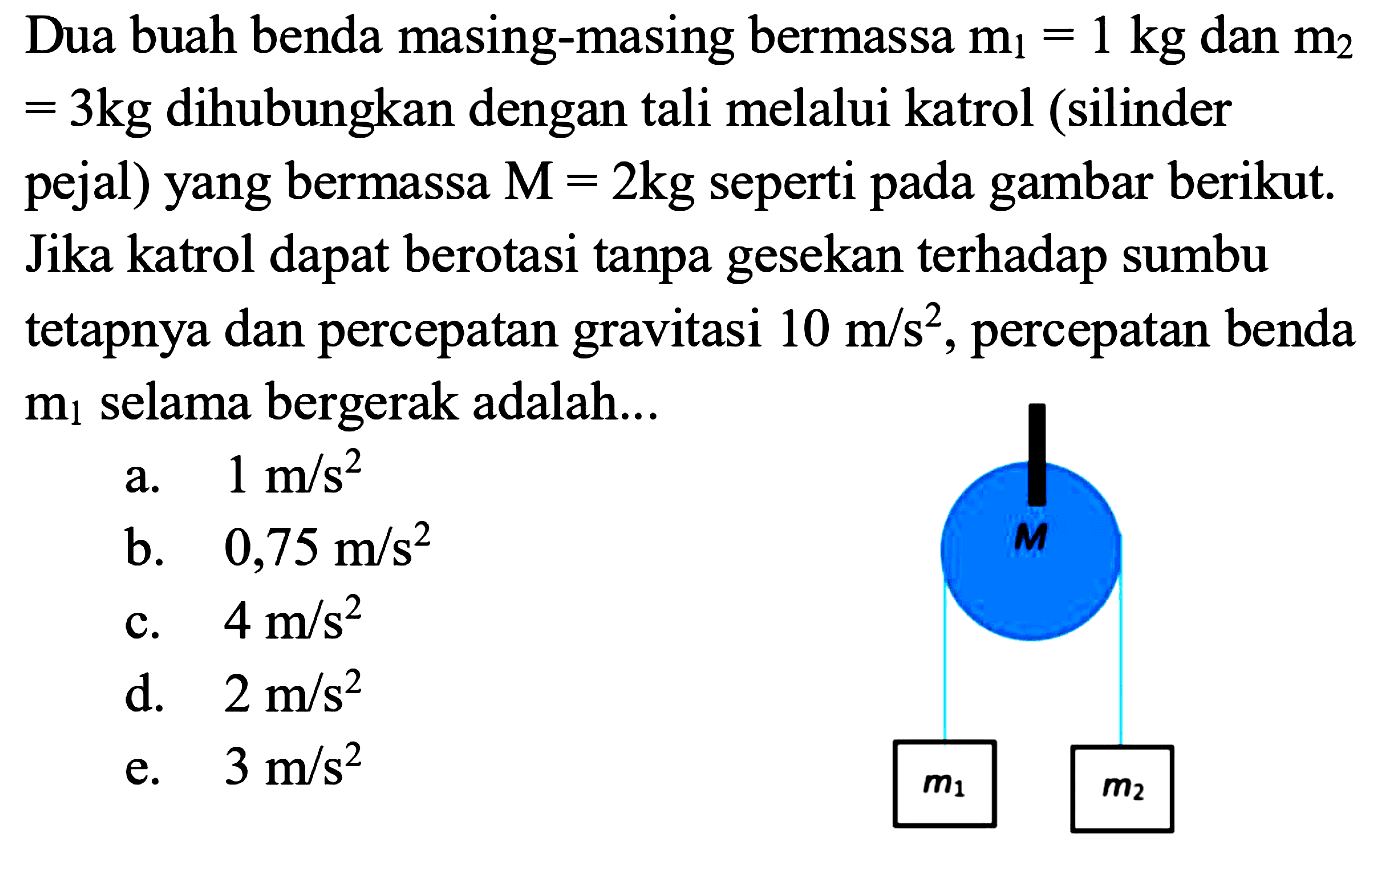 Dua buah benda masing-masing bermassa m1=1kg dan m2=3kg dihubungkan dengan tali melalui katrol (silinder pejal) yang bermassa M=2kg seperti pada gambar berikut. Jika katrol dapat berotasi tanpa gesekan terhadap sumbu tetapnya dan percepatan gravitasi 10 m/s^2, percepatan benda m1 selama bergerak adalah....m1 M m2